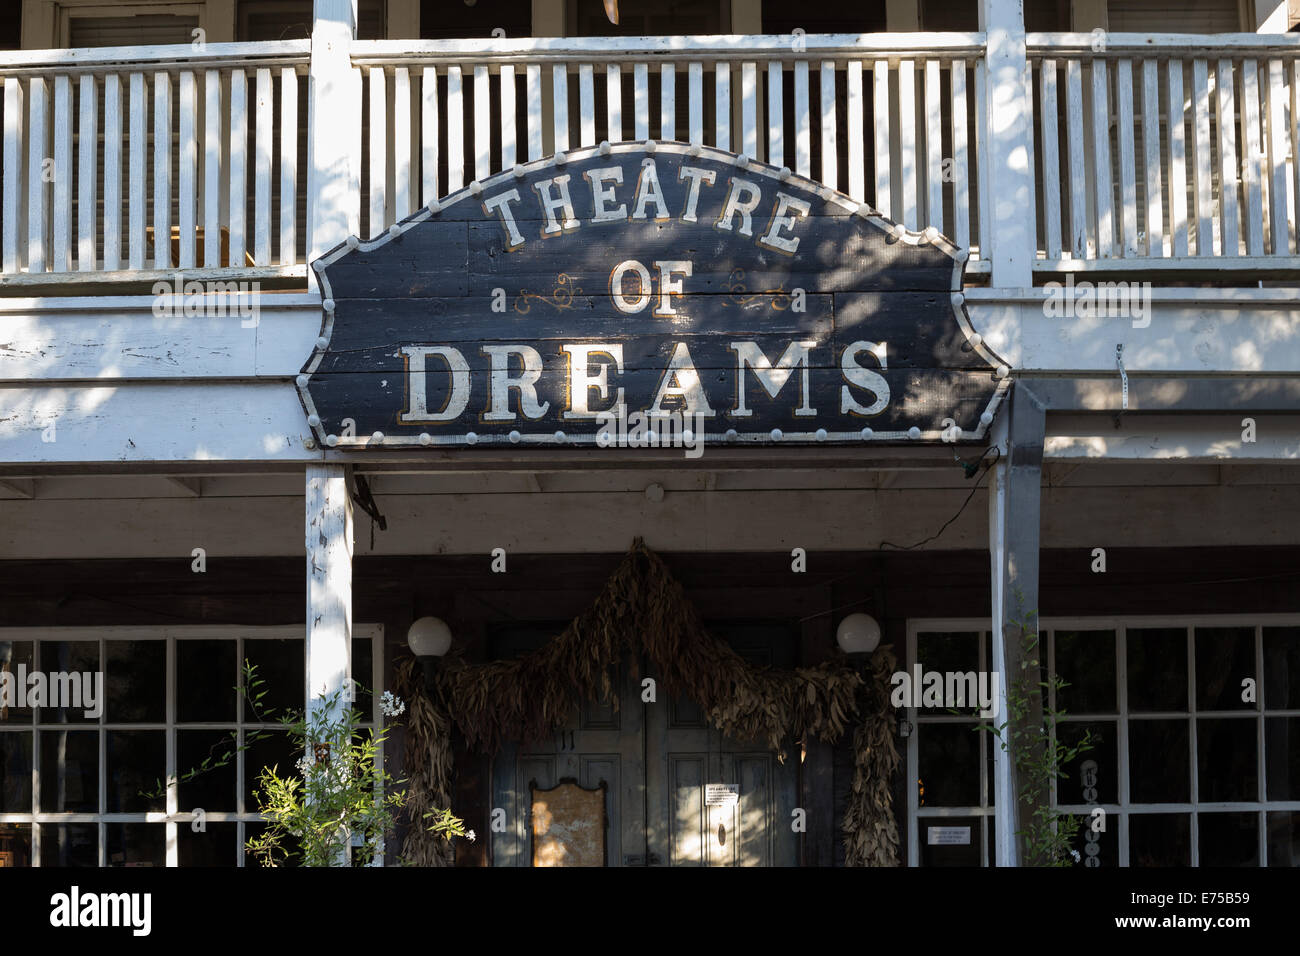 Theatre of Dreams in Historic Downtown Port Costa California. Stock Photo